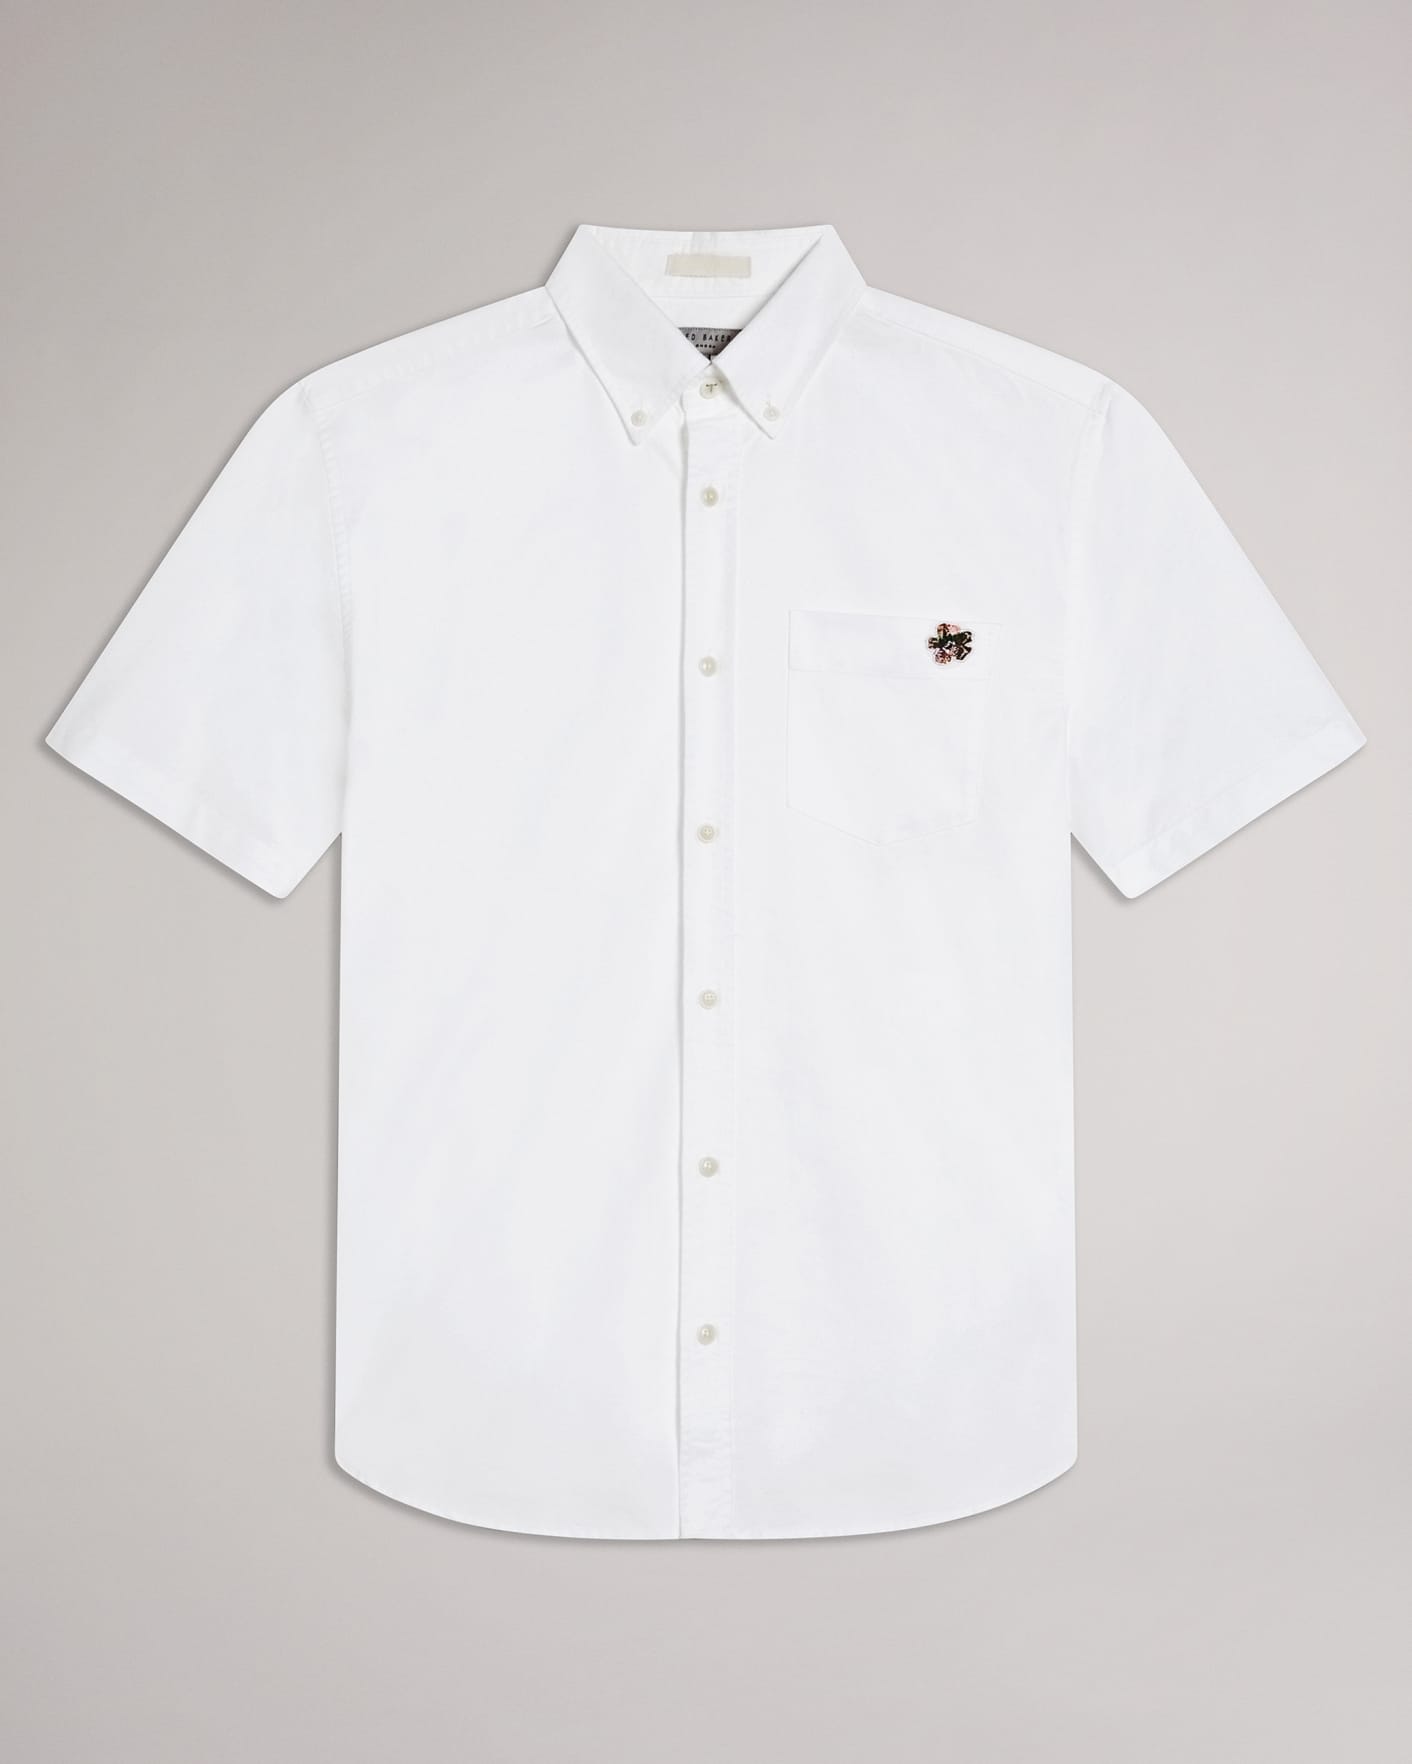 WHITE Short Sleeve Oxford Shirt Ted Baker